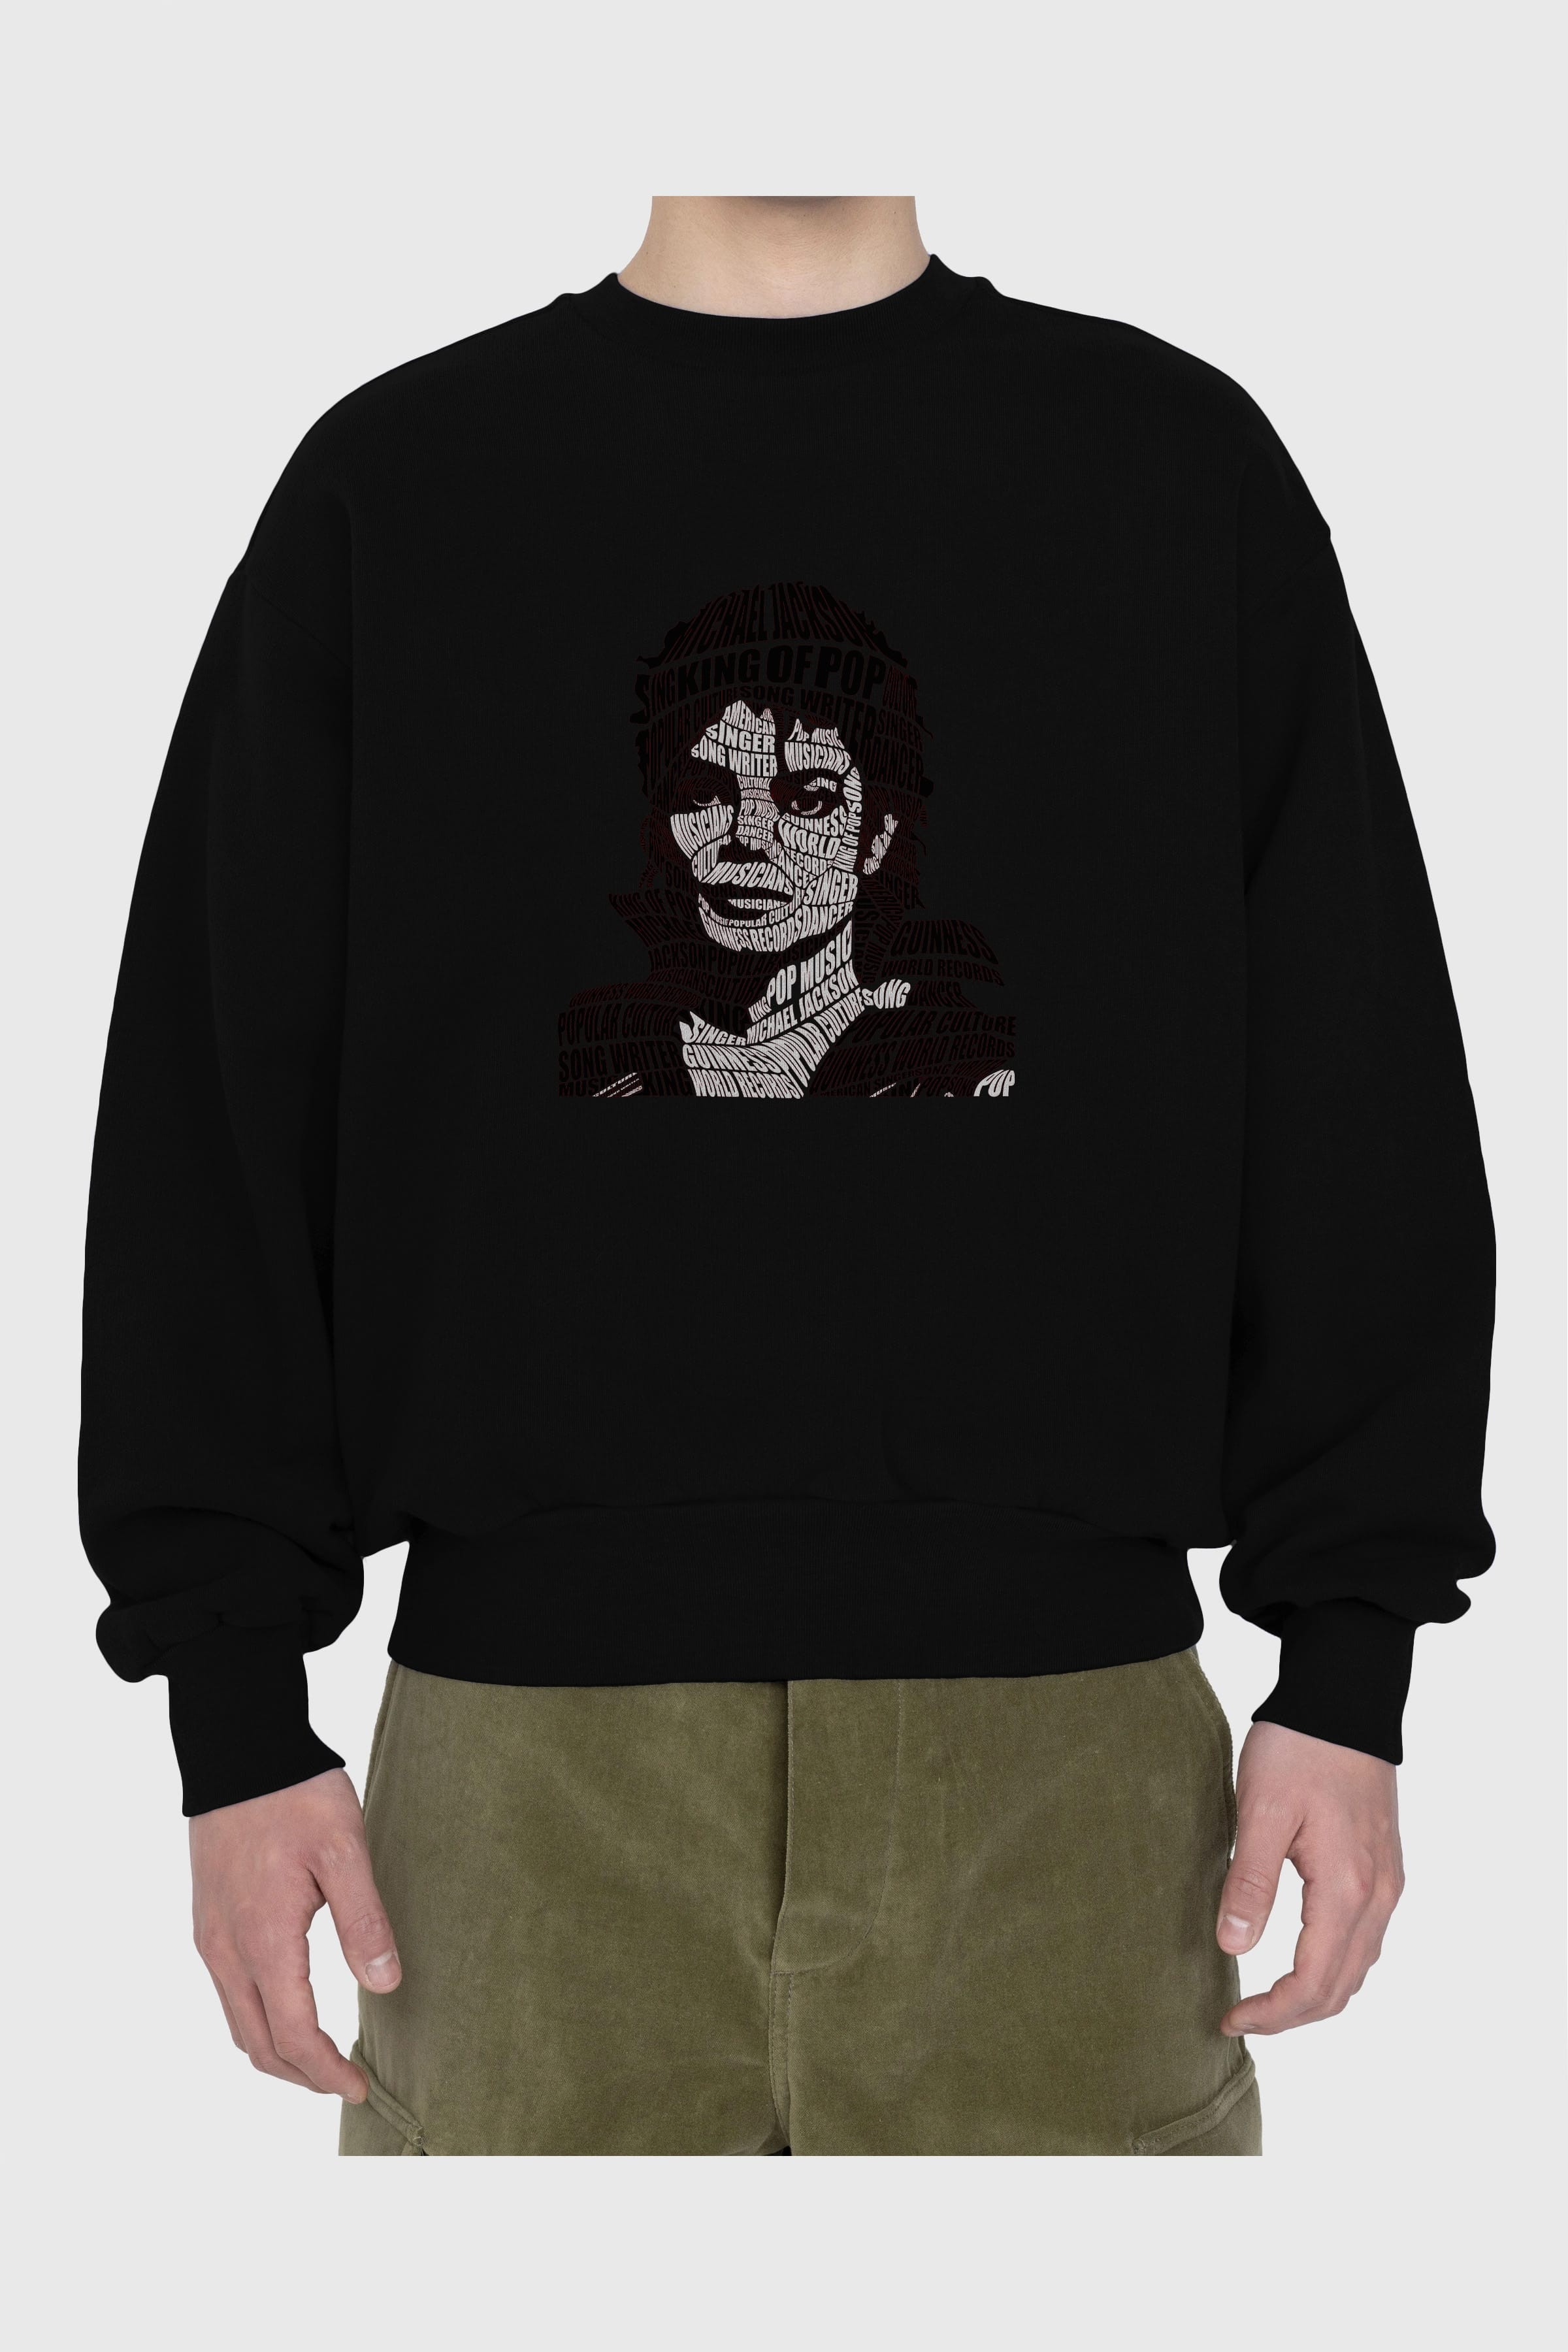 Michael Jackson Calligram Ön Baskılı Oversize Sweatshirt Erkek Kadın Unisex